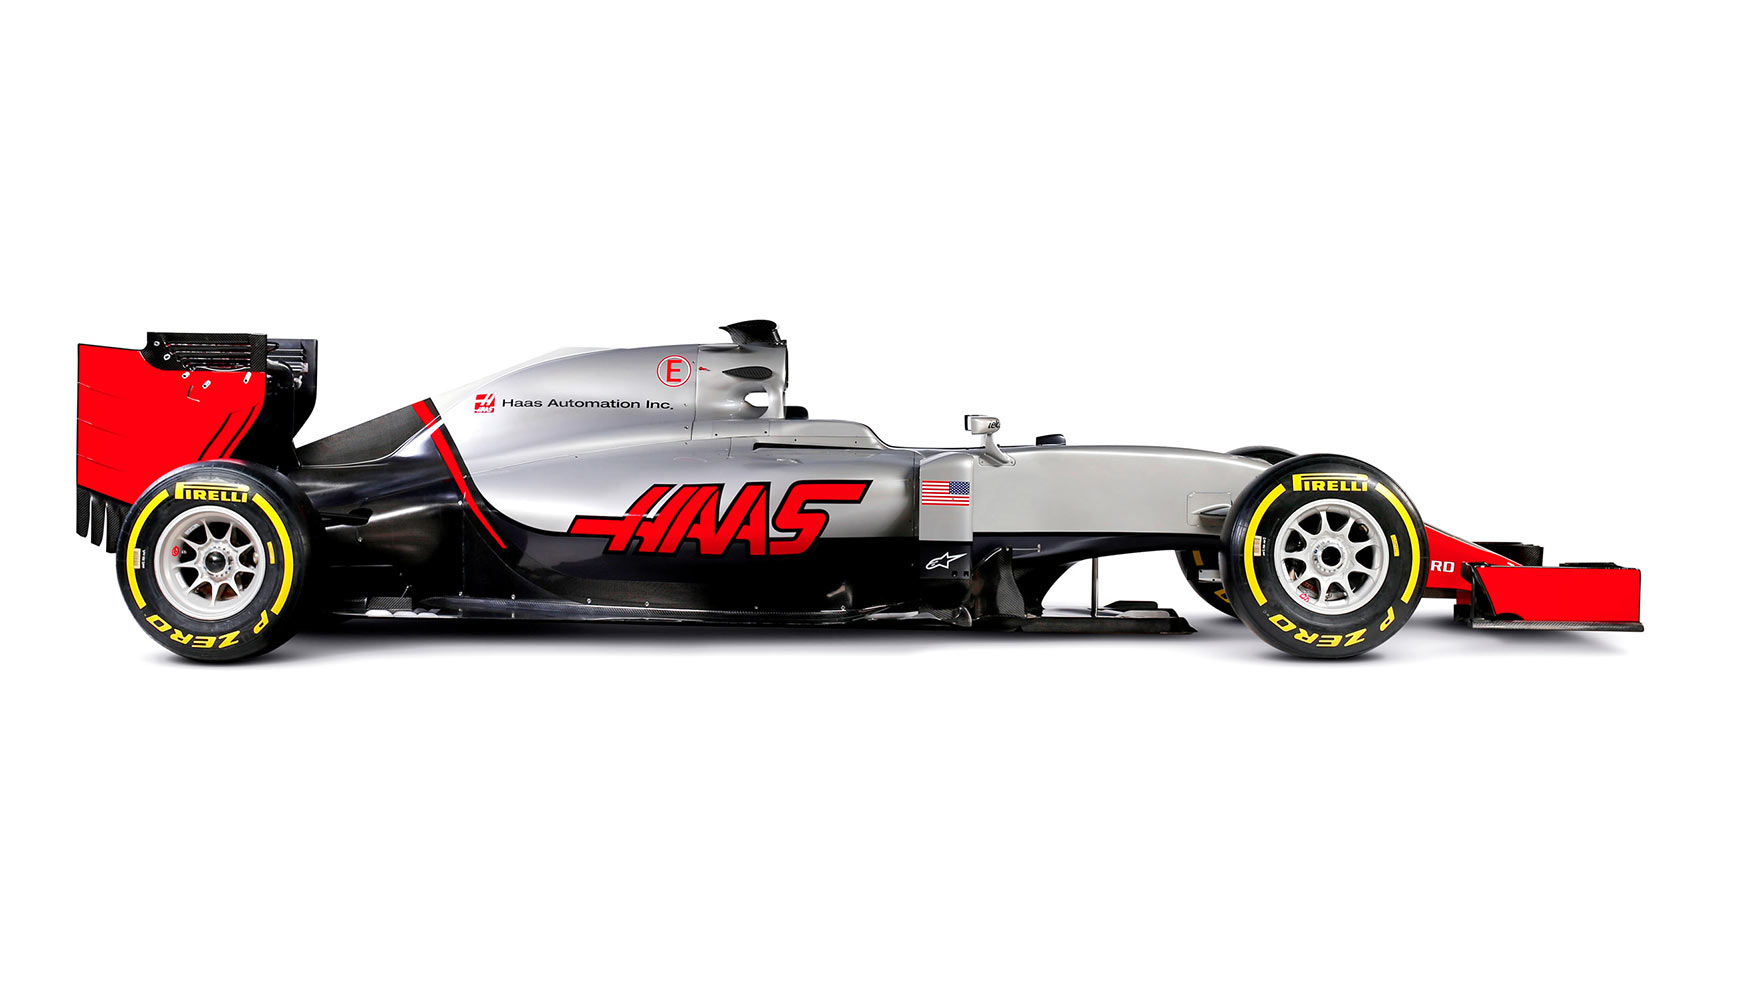 Haas F1 Team debutar en el Campeonato del Mundo FIA de Frmula 1 en 2016...